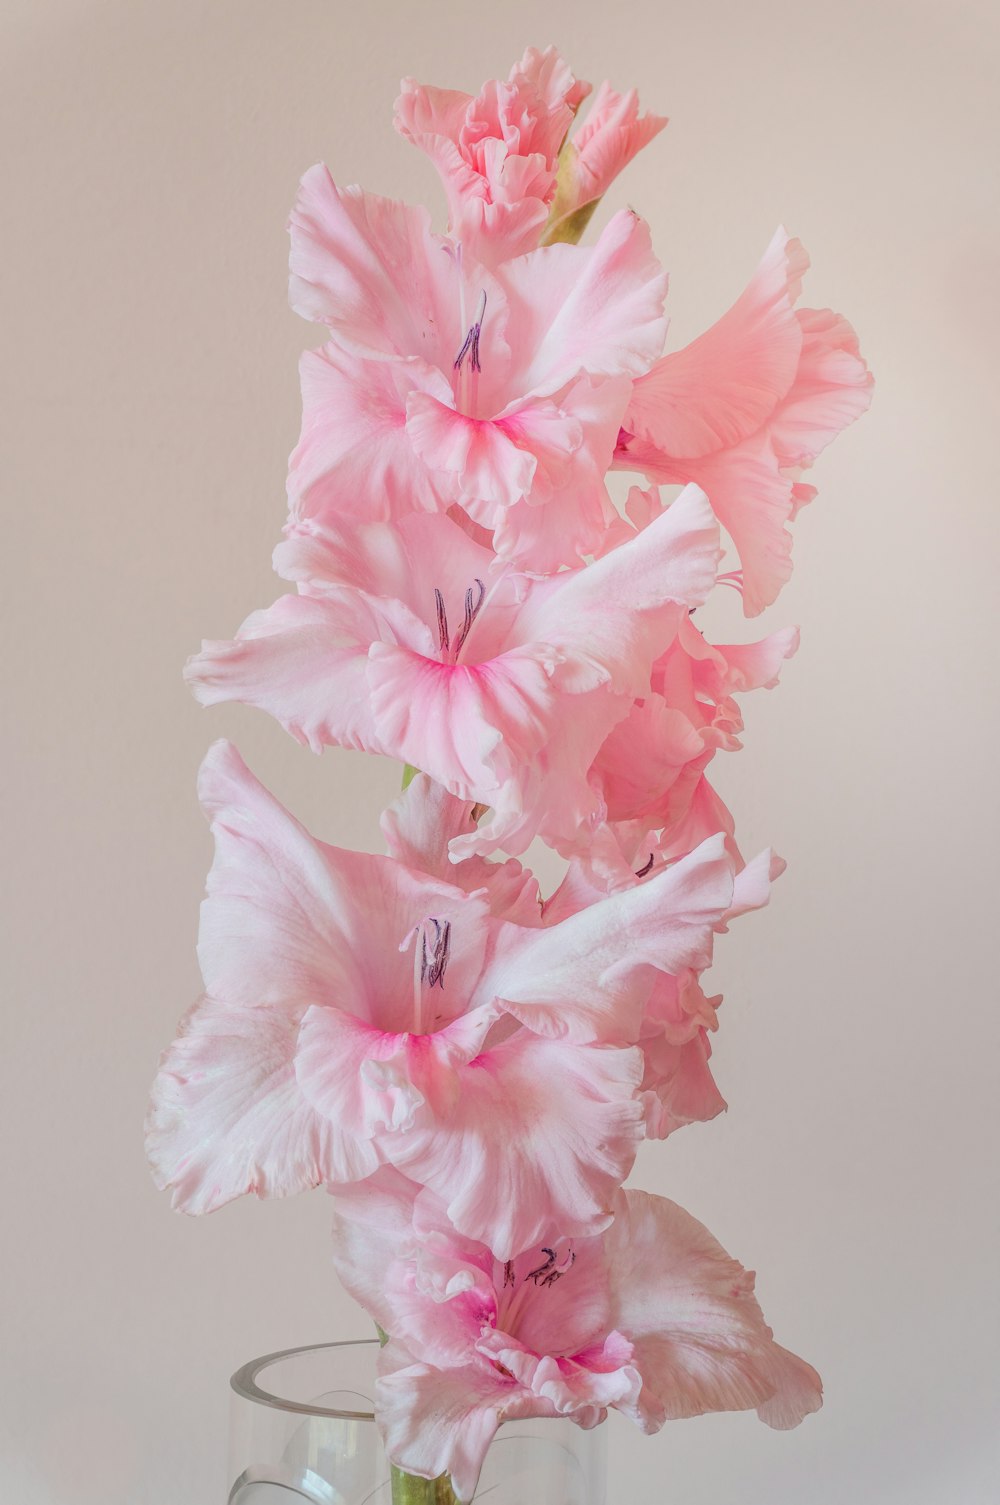 핑크 히비스커스 꽃이 만발한 클로즈업 사진